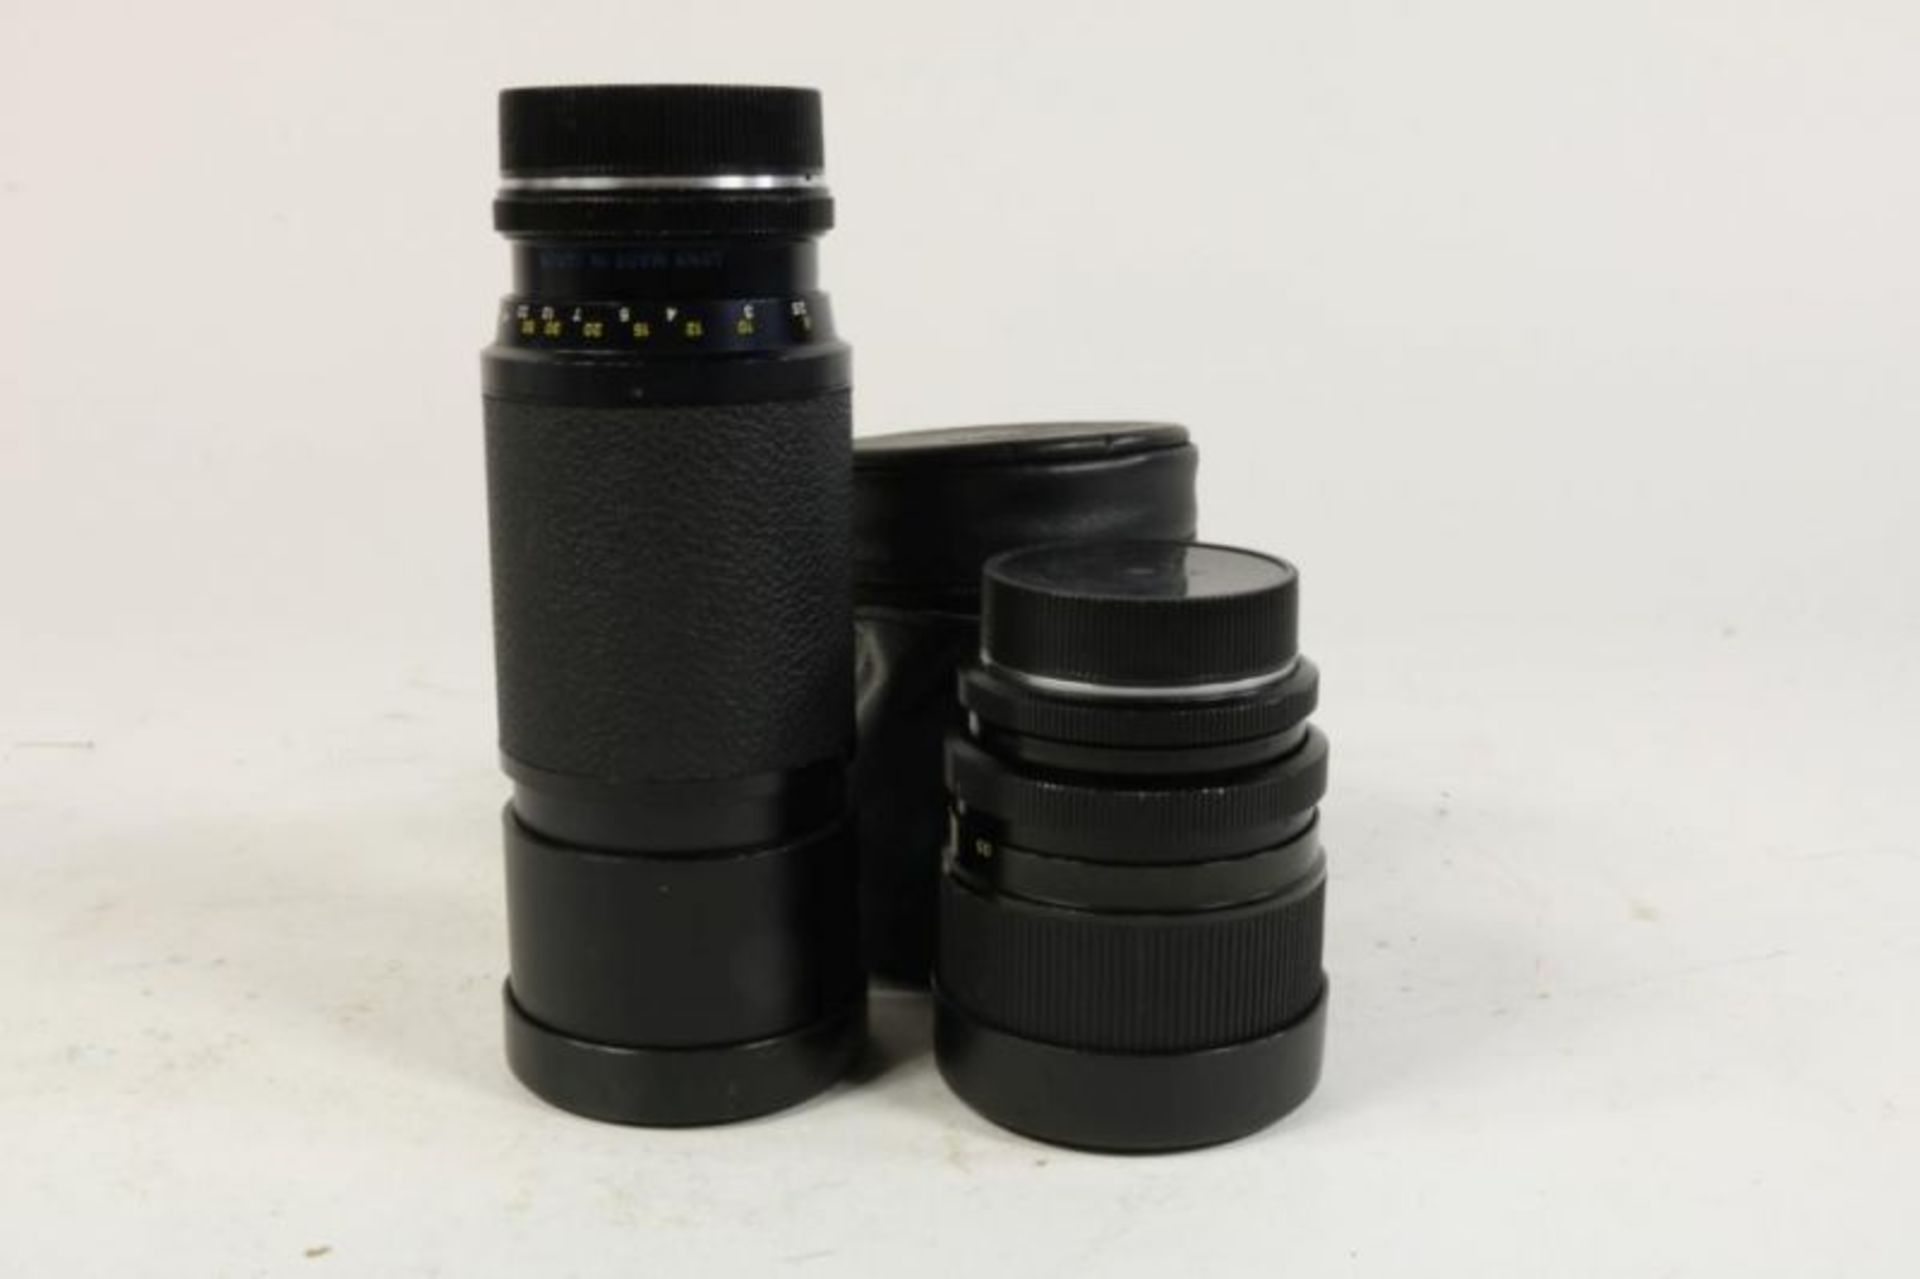 Leica RE spiegelreflexcamera met diverse lensen, macro-ring, waarbij originele doos - Bild 5 aus 5